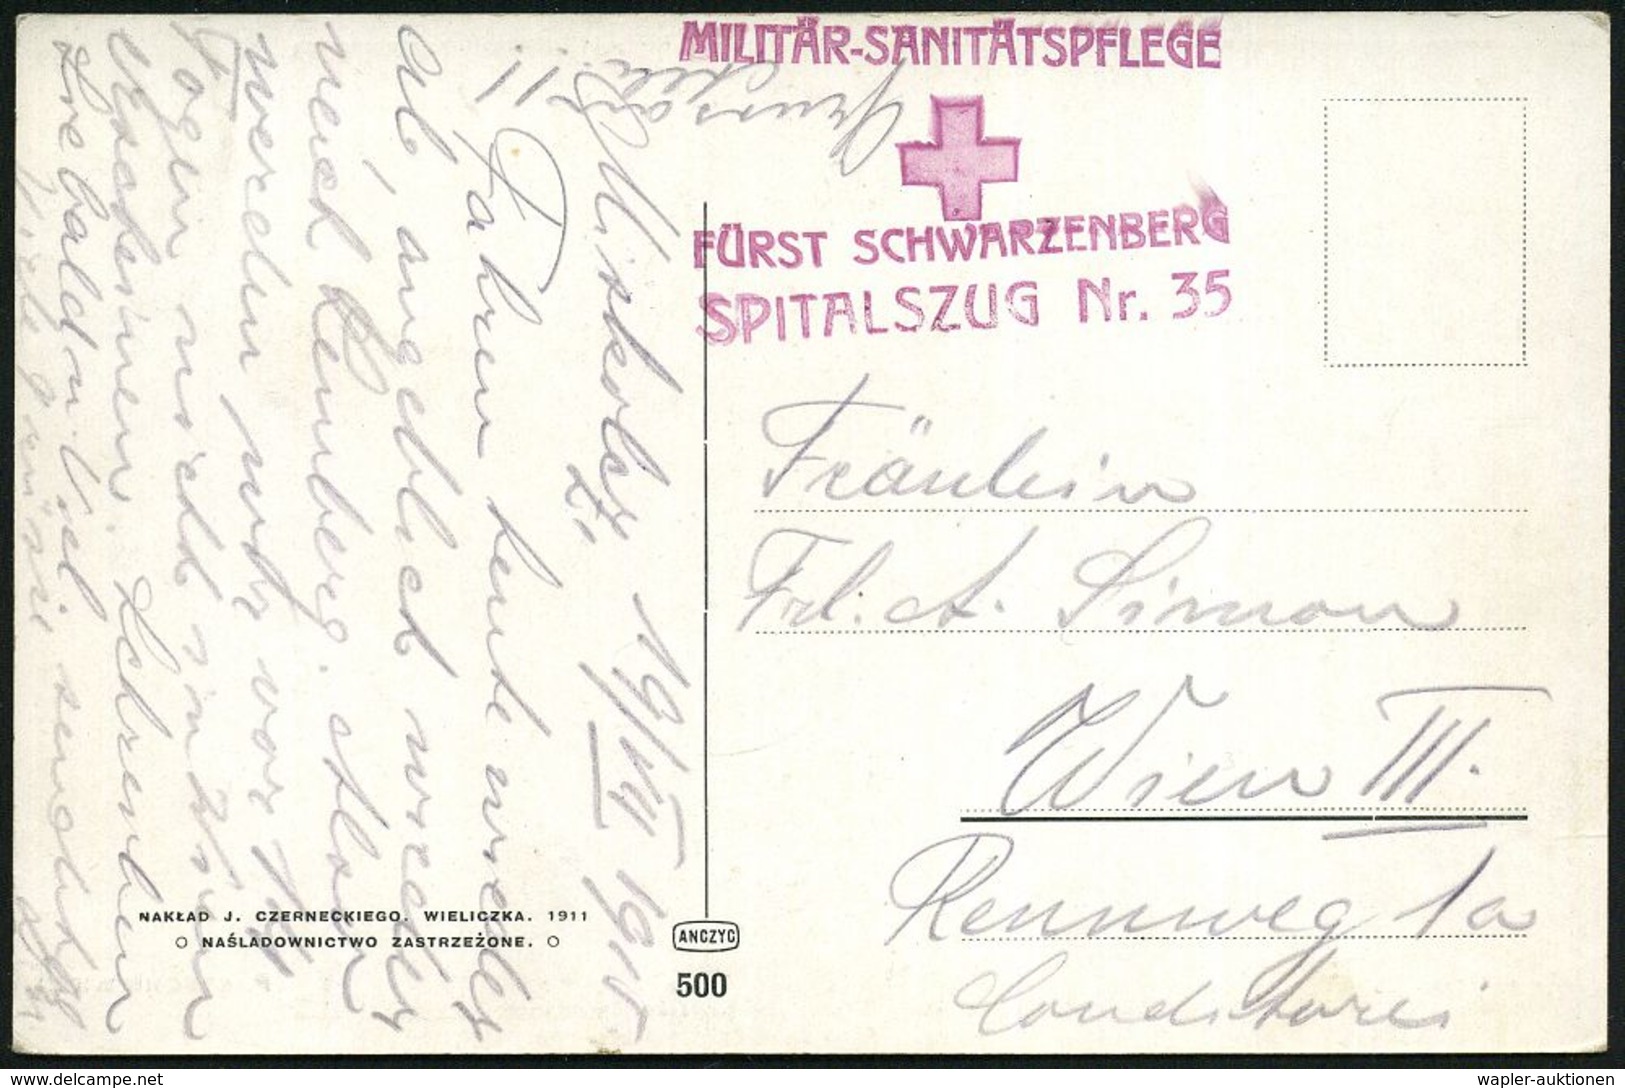 MILITÄR-MEDIZIN / SANITÄTSDIENSTE : ÖSTERREICH 1915 (19.7.) Viol. Rotkreuz-HdN: MILITÄR-SANITÄSPFLEGE/ FÜRST SCHWARZENBE - Medicine